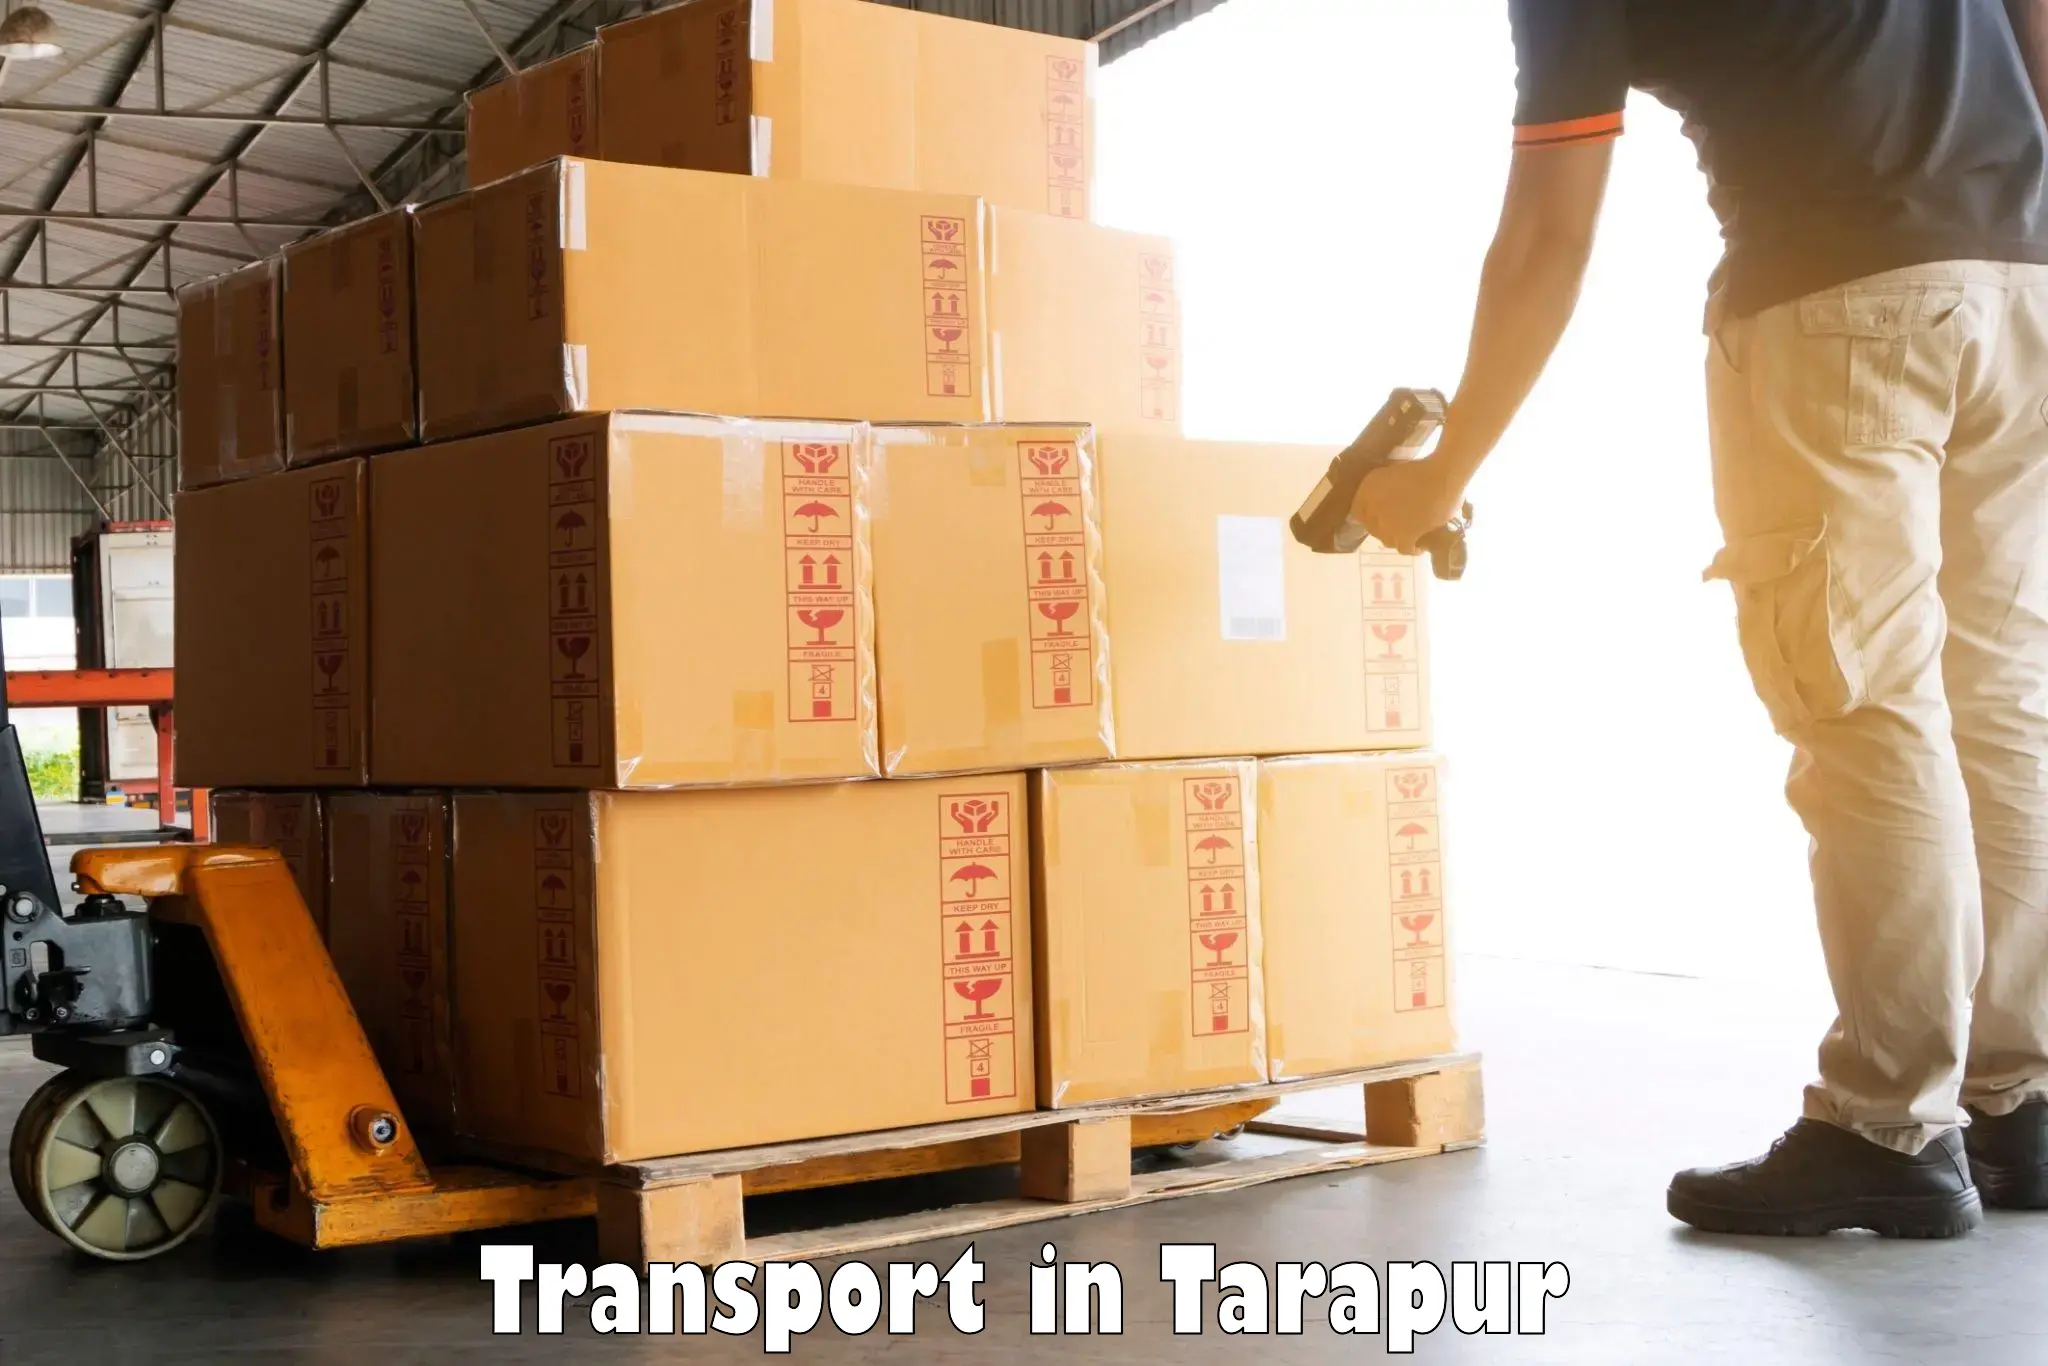 Air cargo transport services in Tarapur